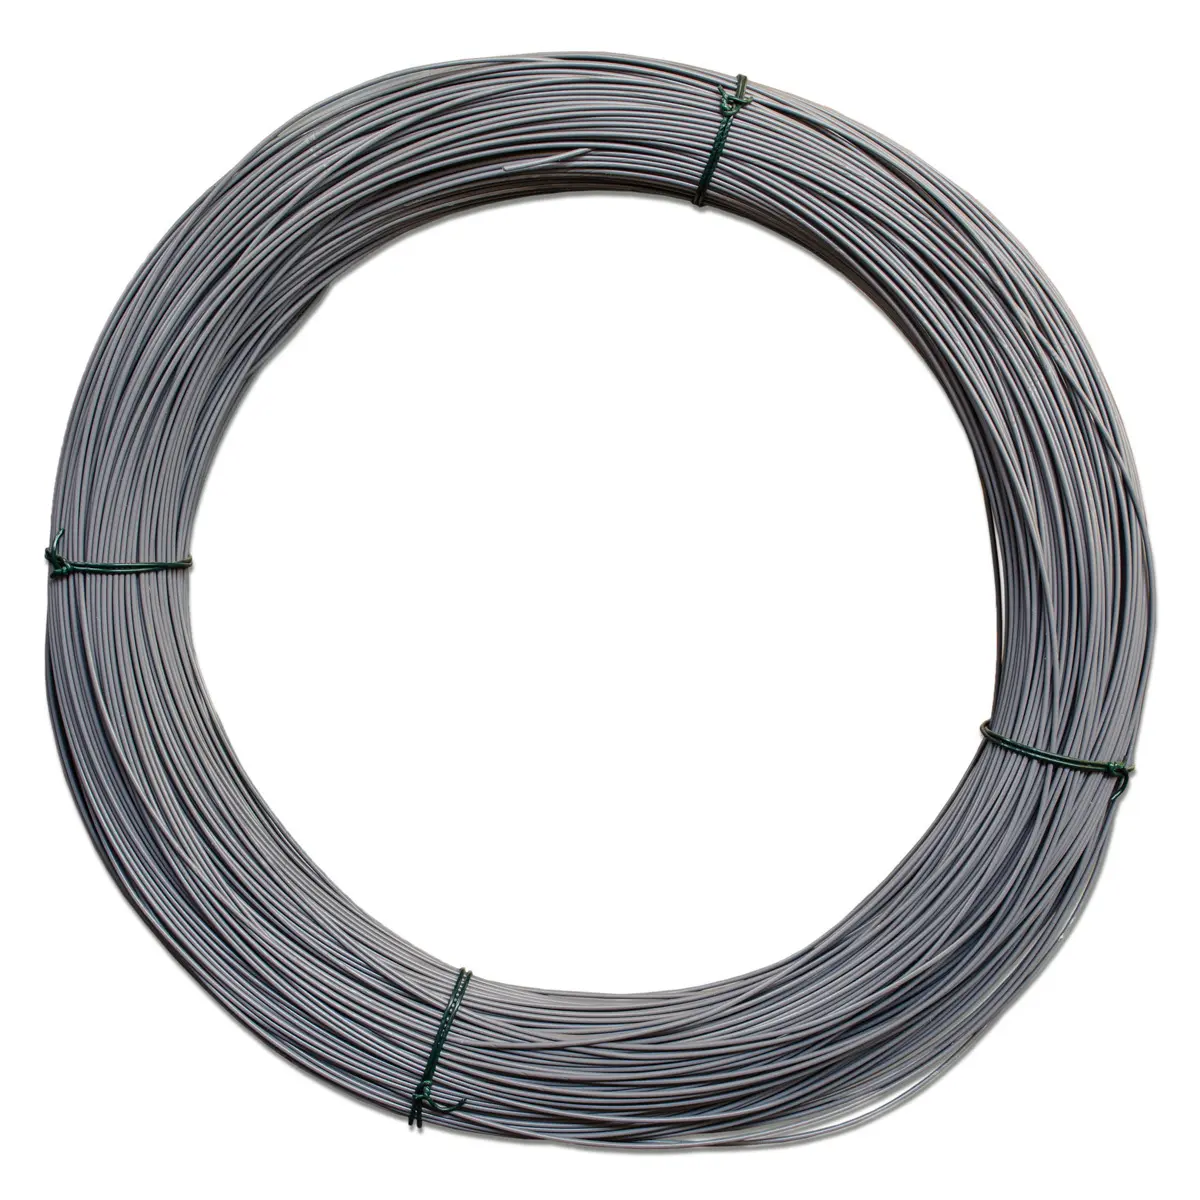 alambre galvanizado forrado en plastico - Dónde se utiliza el alambre galvanizado